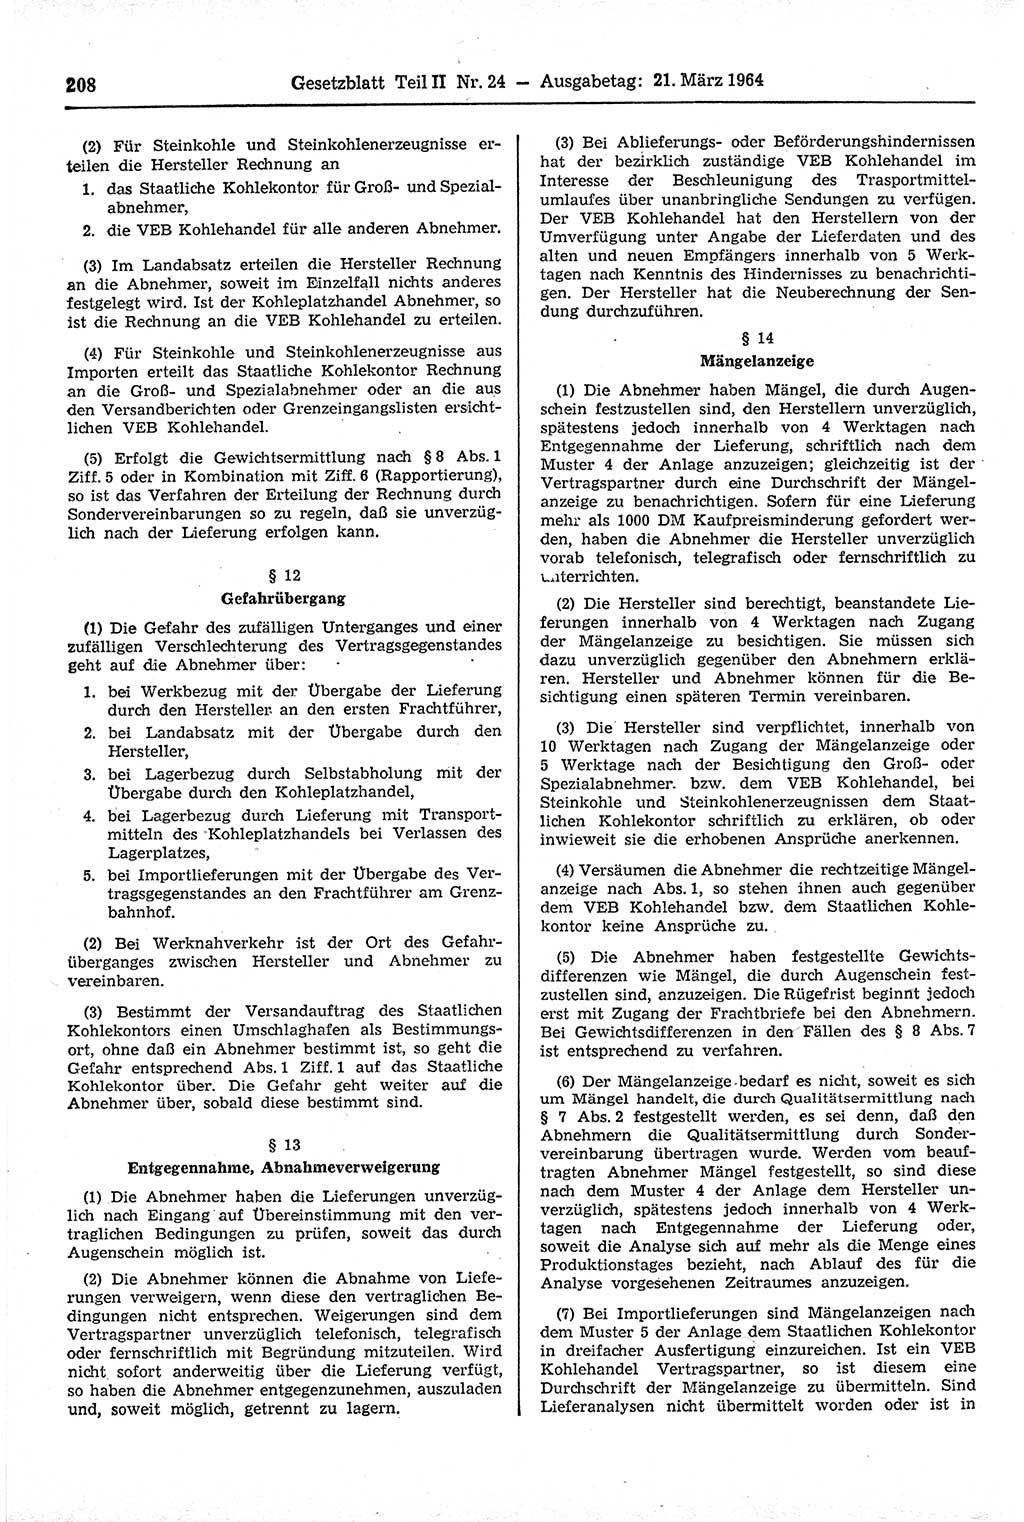 Gesetzblatt (GBl.) der Deutschen Demokratischen Republik (DDR) Teil ⅠⅠ 1964, Seite 208 (GBl. DDR ⅠⅠ 1964, S. 208)